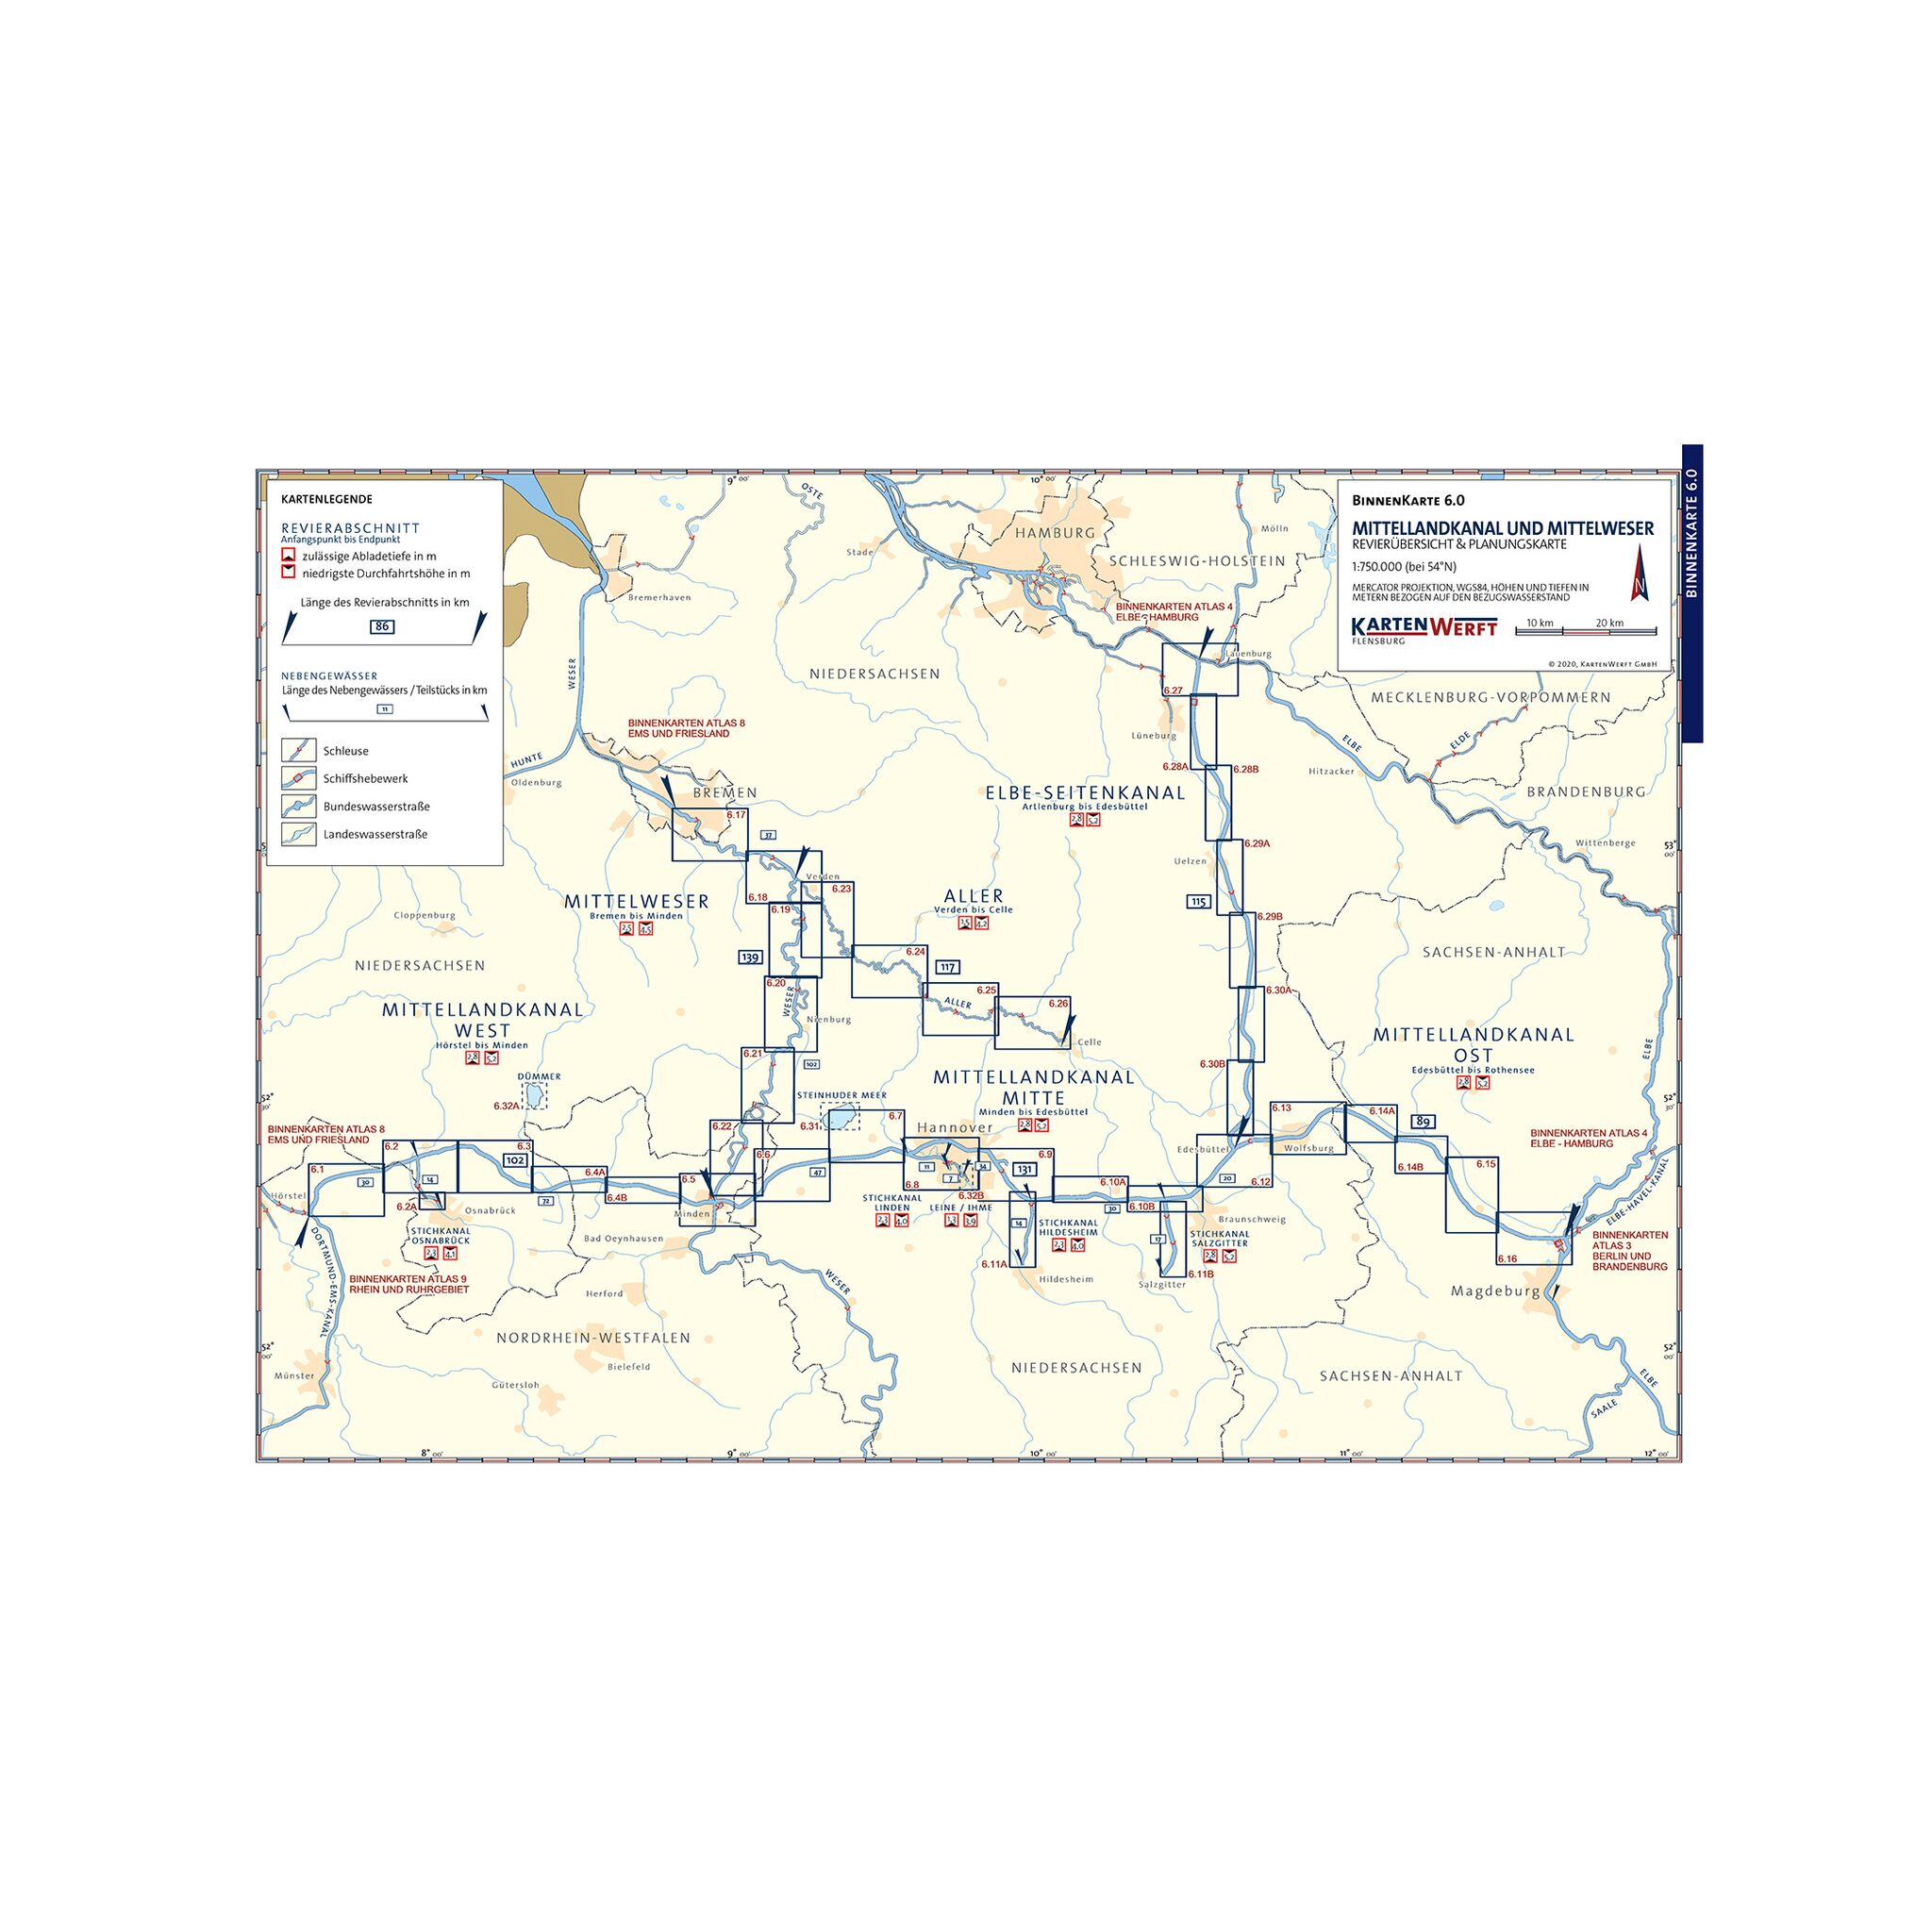 KartenWerft Binnenkarten Atlas 6 | Mittellandkanal und Mittelweser